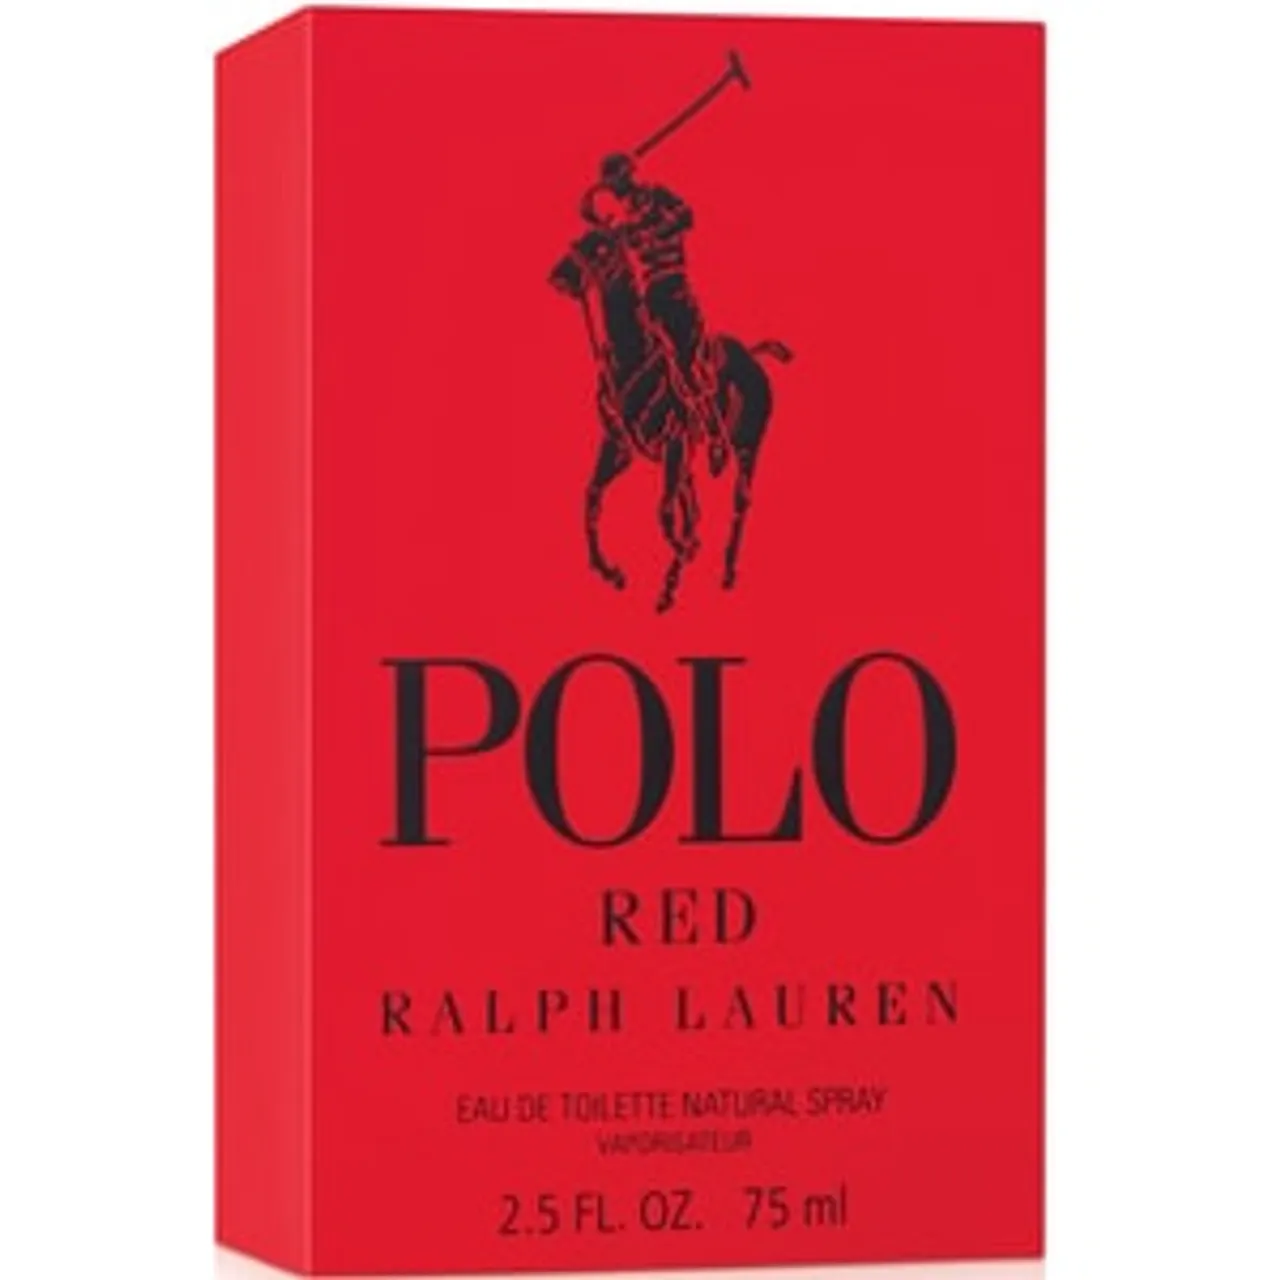 Ralph Lauren Polo Red EAU DE TOILETTE 75 ML